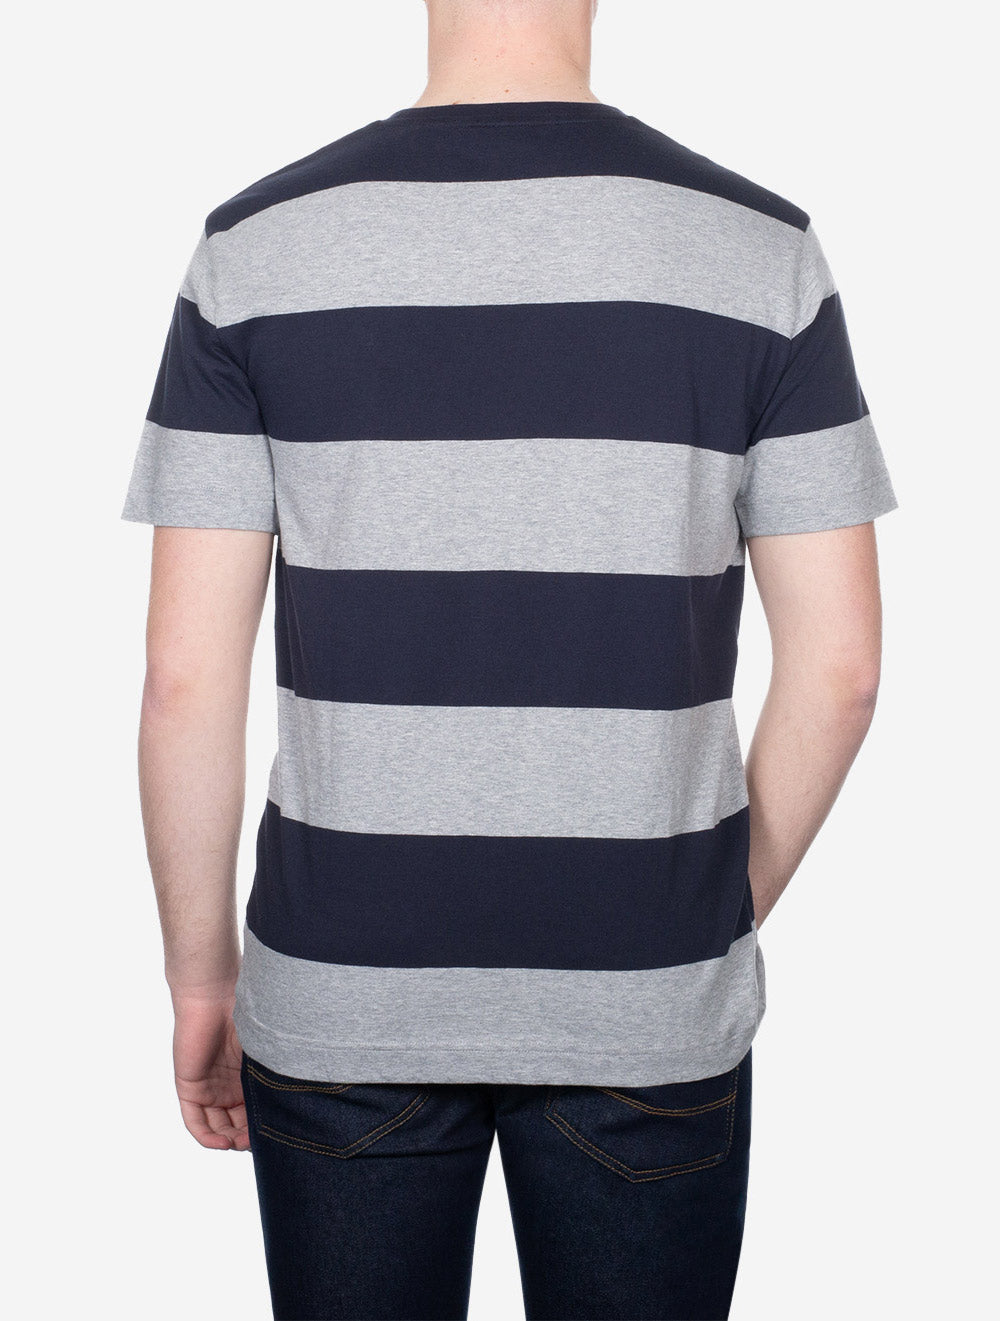 Bar Stripe Short Sleeve T-Shirt Grey Melange